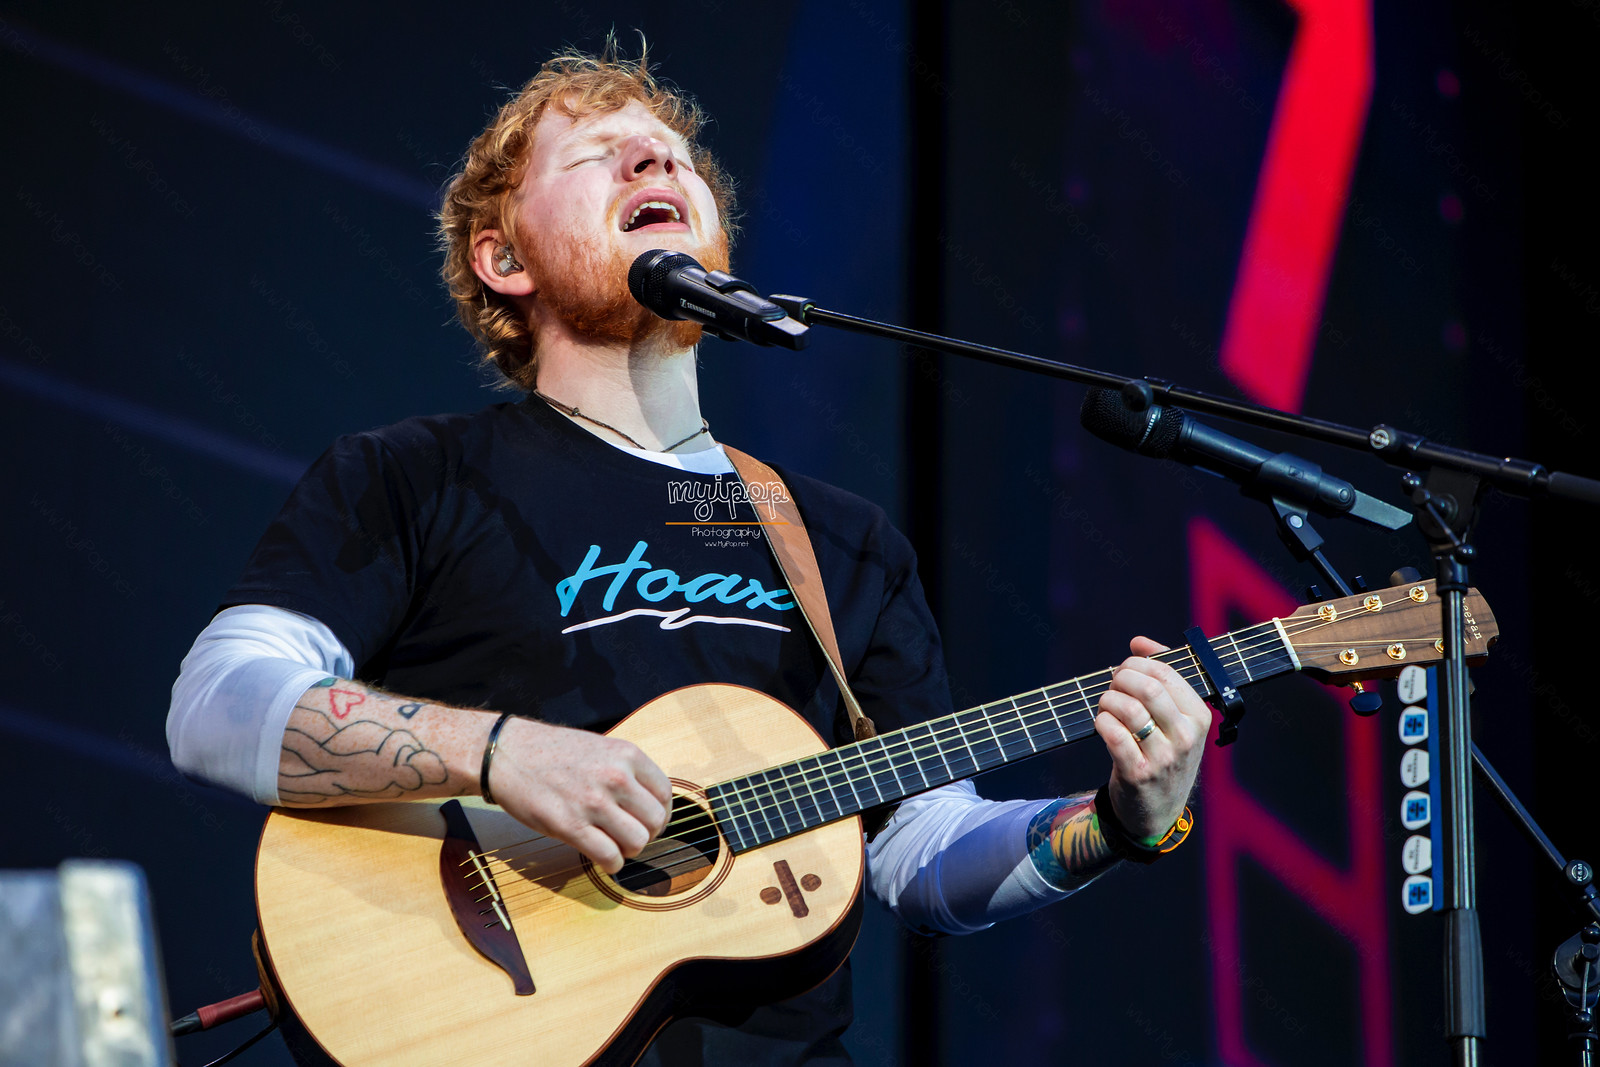 La ecuación perfecta de Ed Sheeran enamora a Madrid